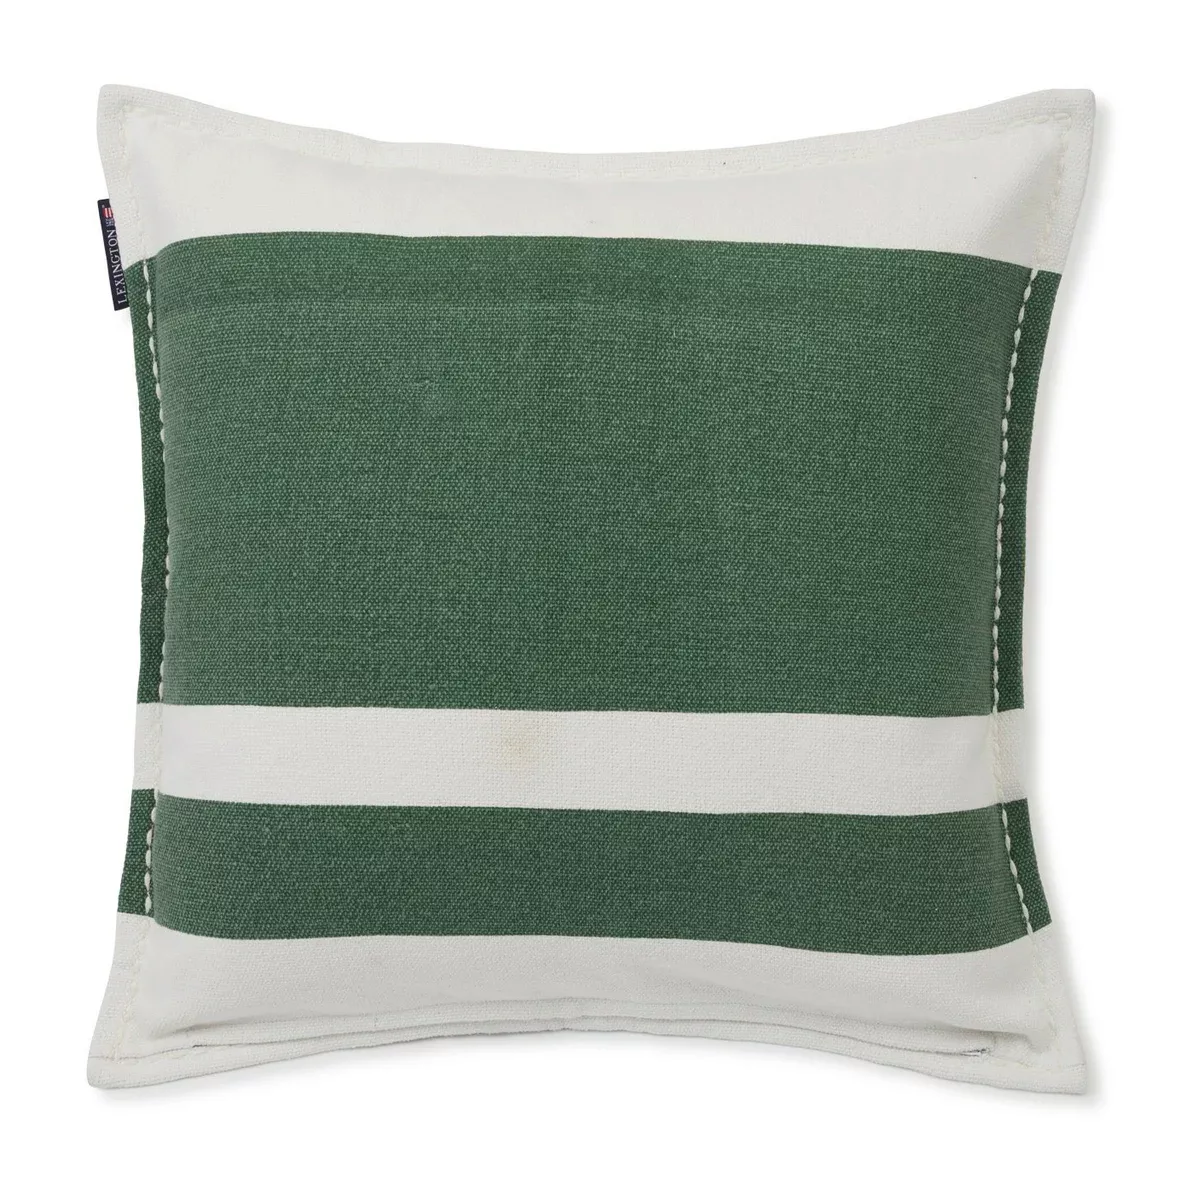 Irregula Striped Cotton Kissenbezug 50 x 50cm Green-White günstig online kaufen